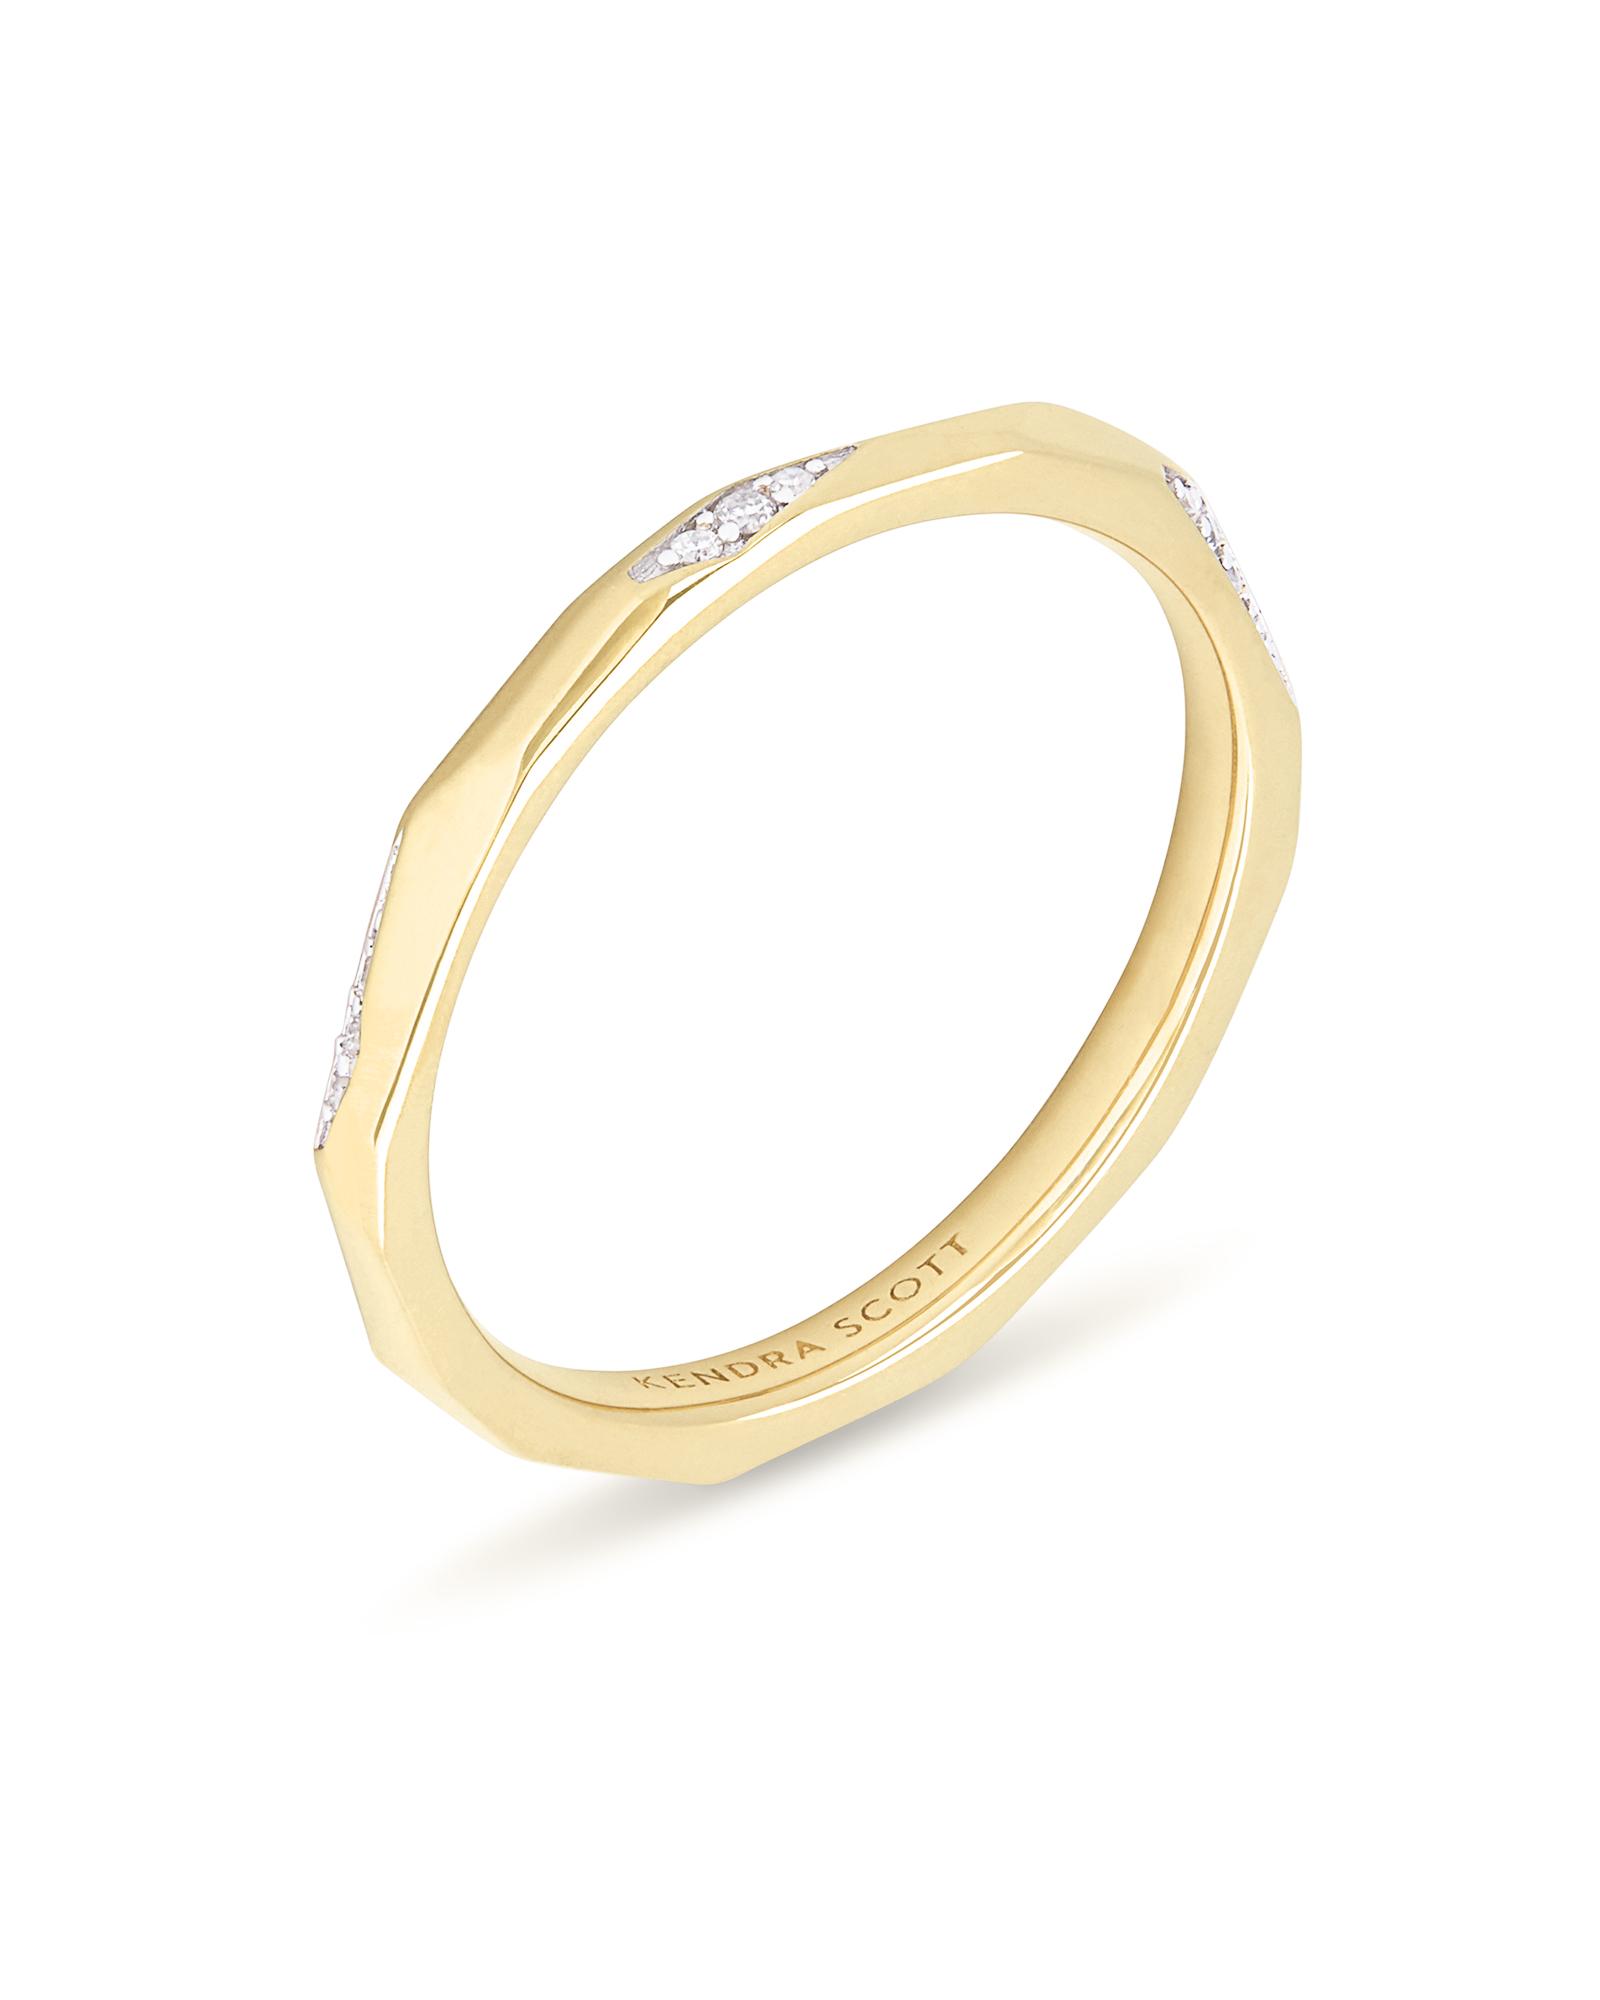 Kendra Scott Sade 14k Yellow Gold Band Ring in White Diamond (Metallic